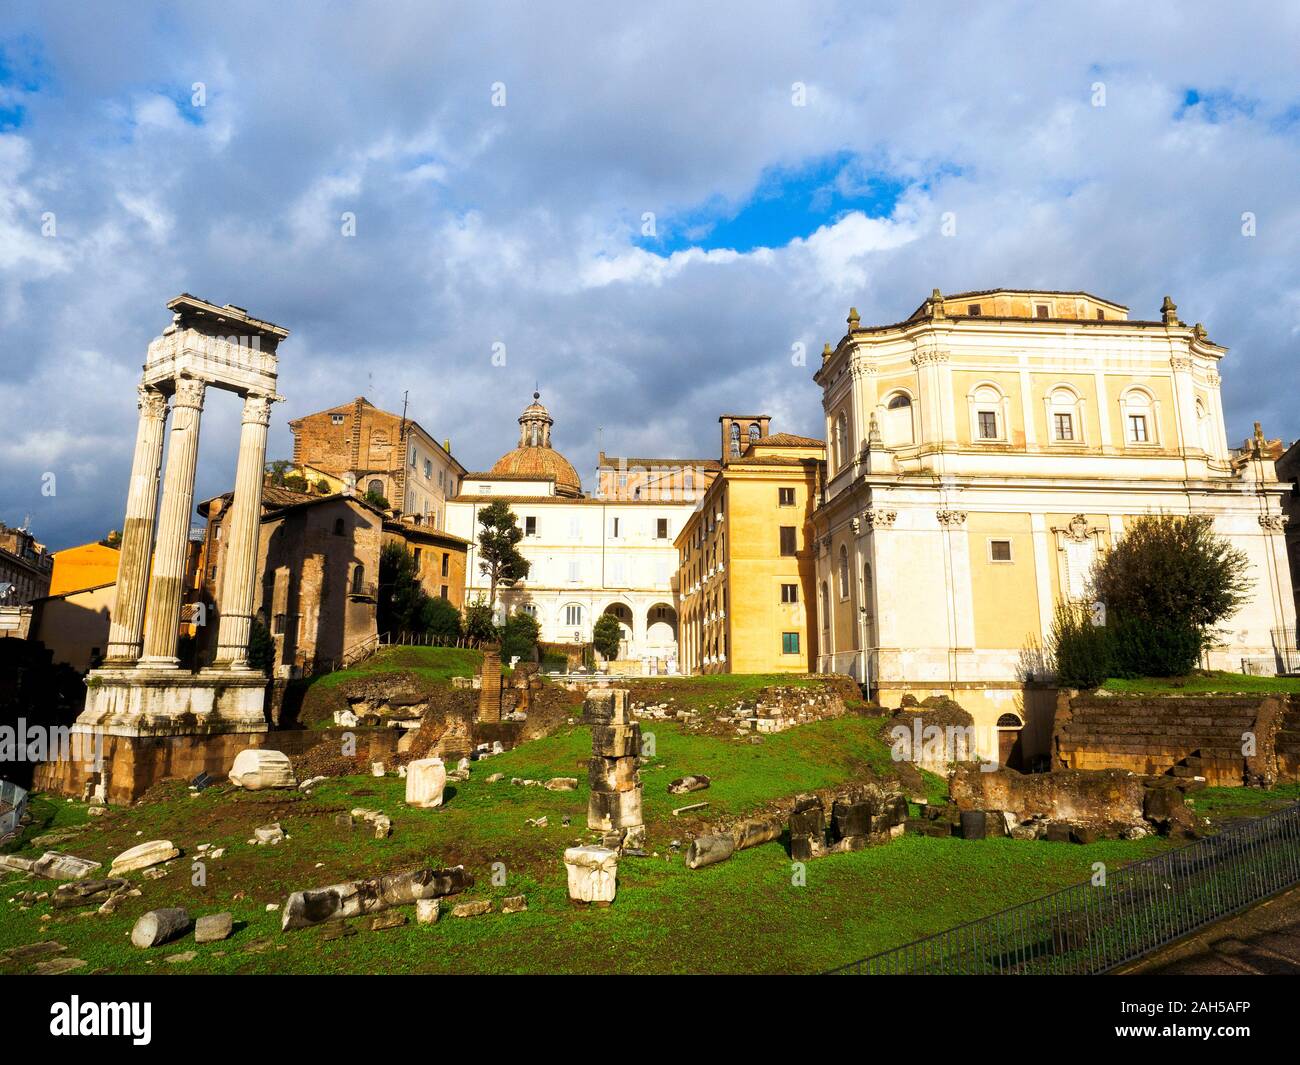 Temple of Apollo Sosianus near the Theatre of Marcellus - Rome, Italy Stock Photo